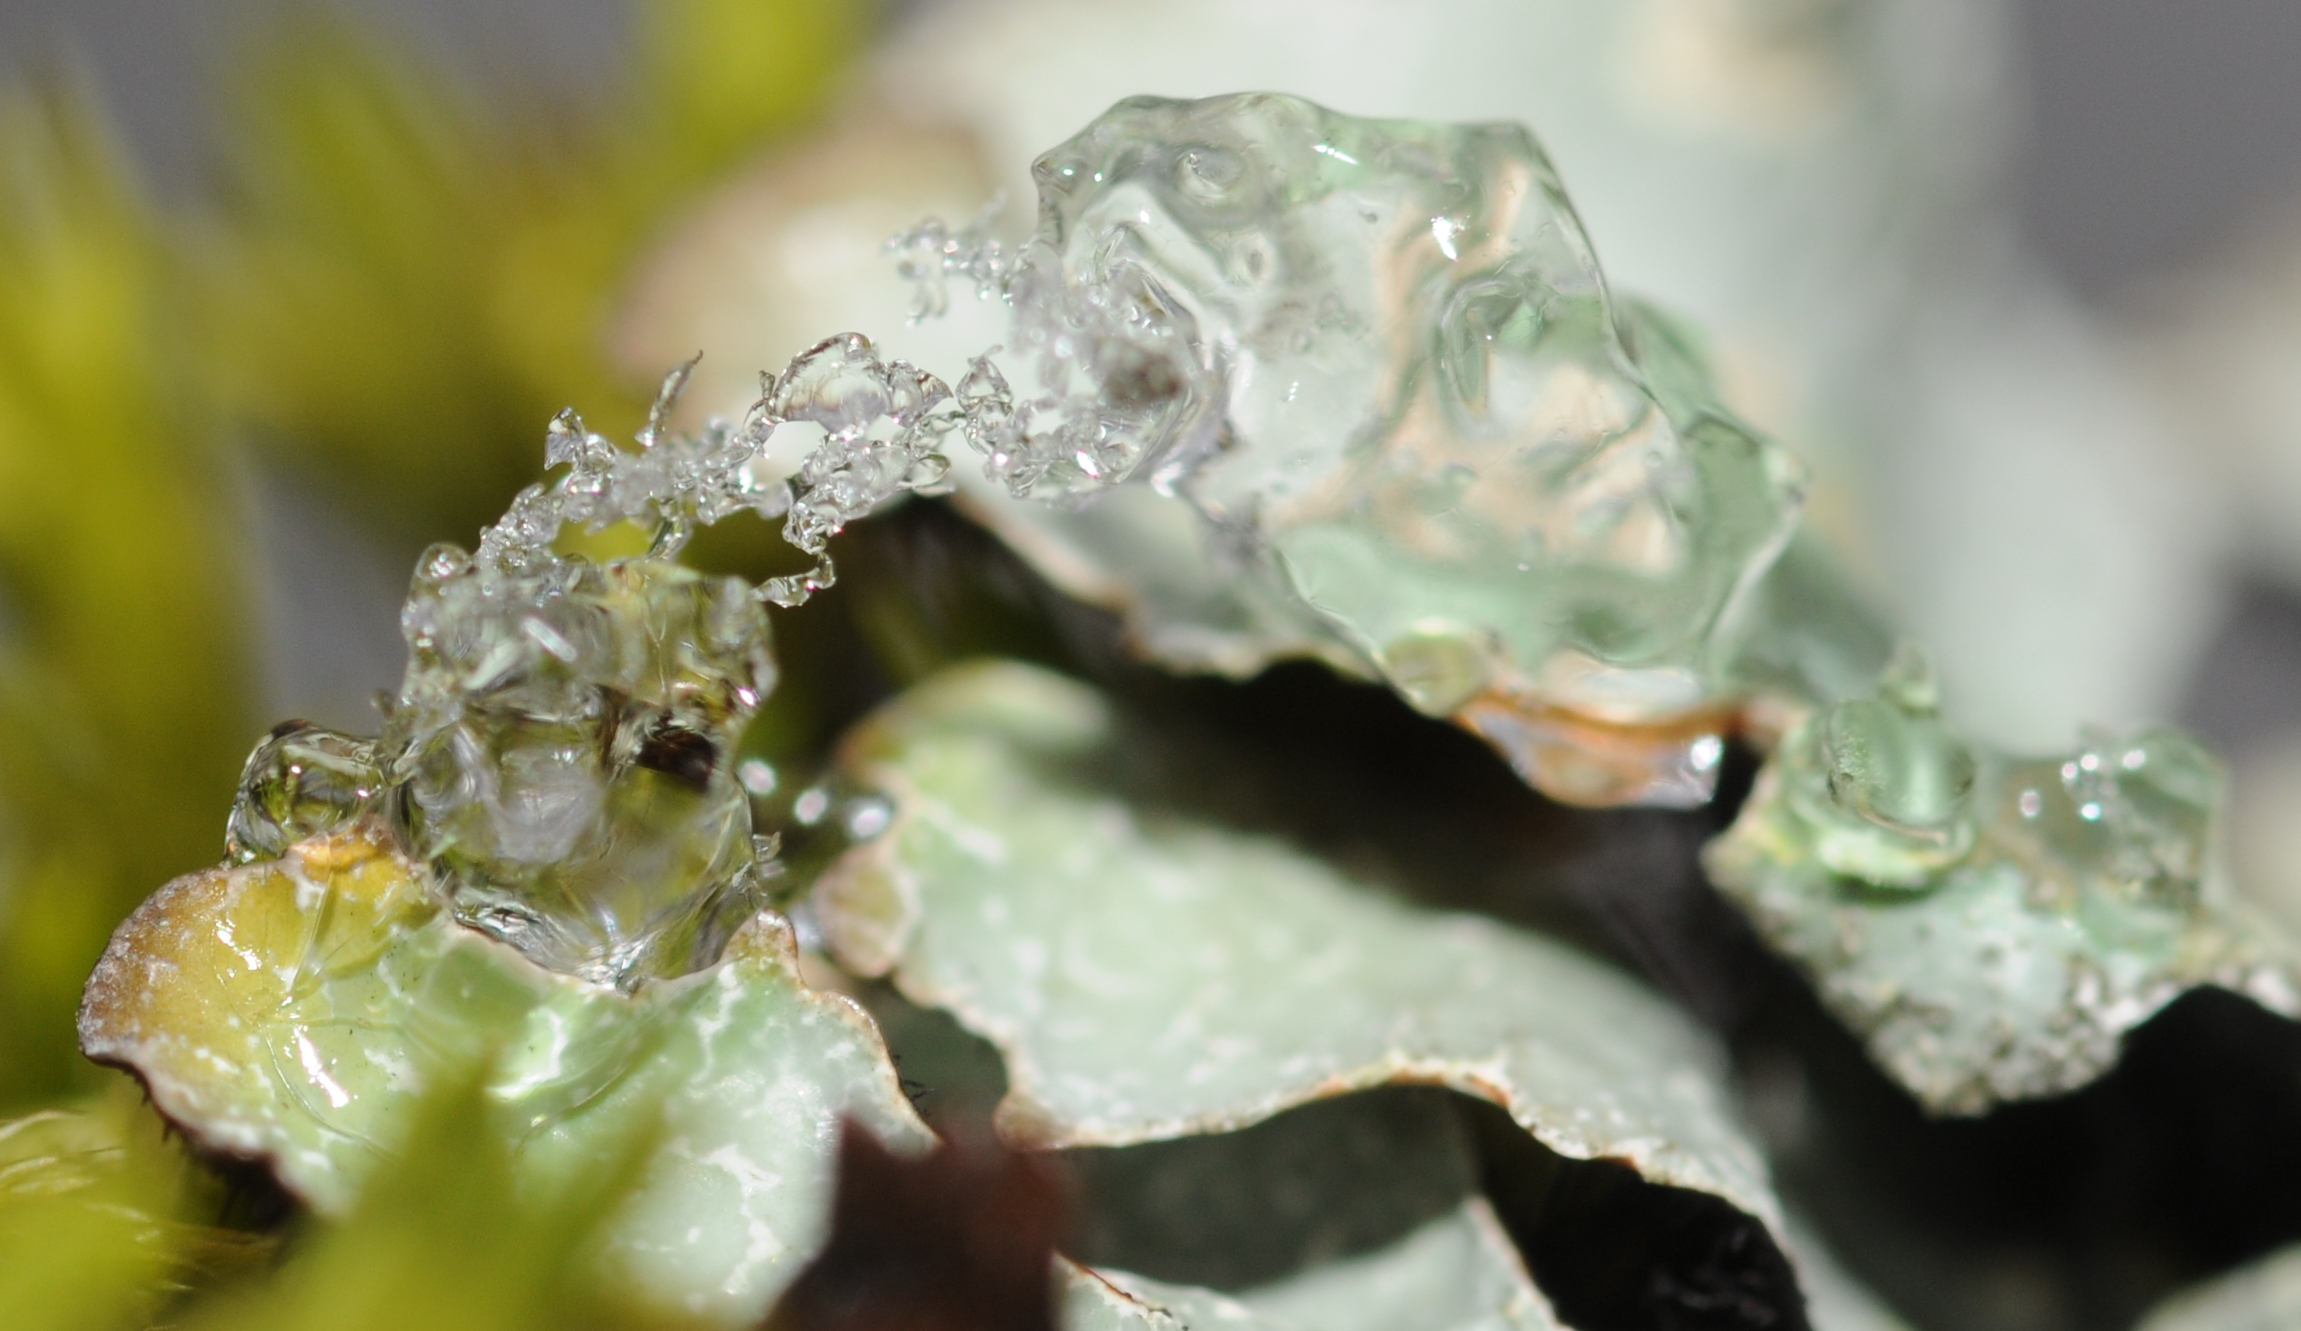 ComputerHotline_-_Snow_crystals_on_lichens_(by).jpg